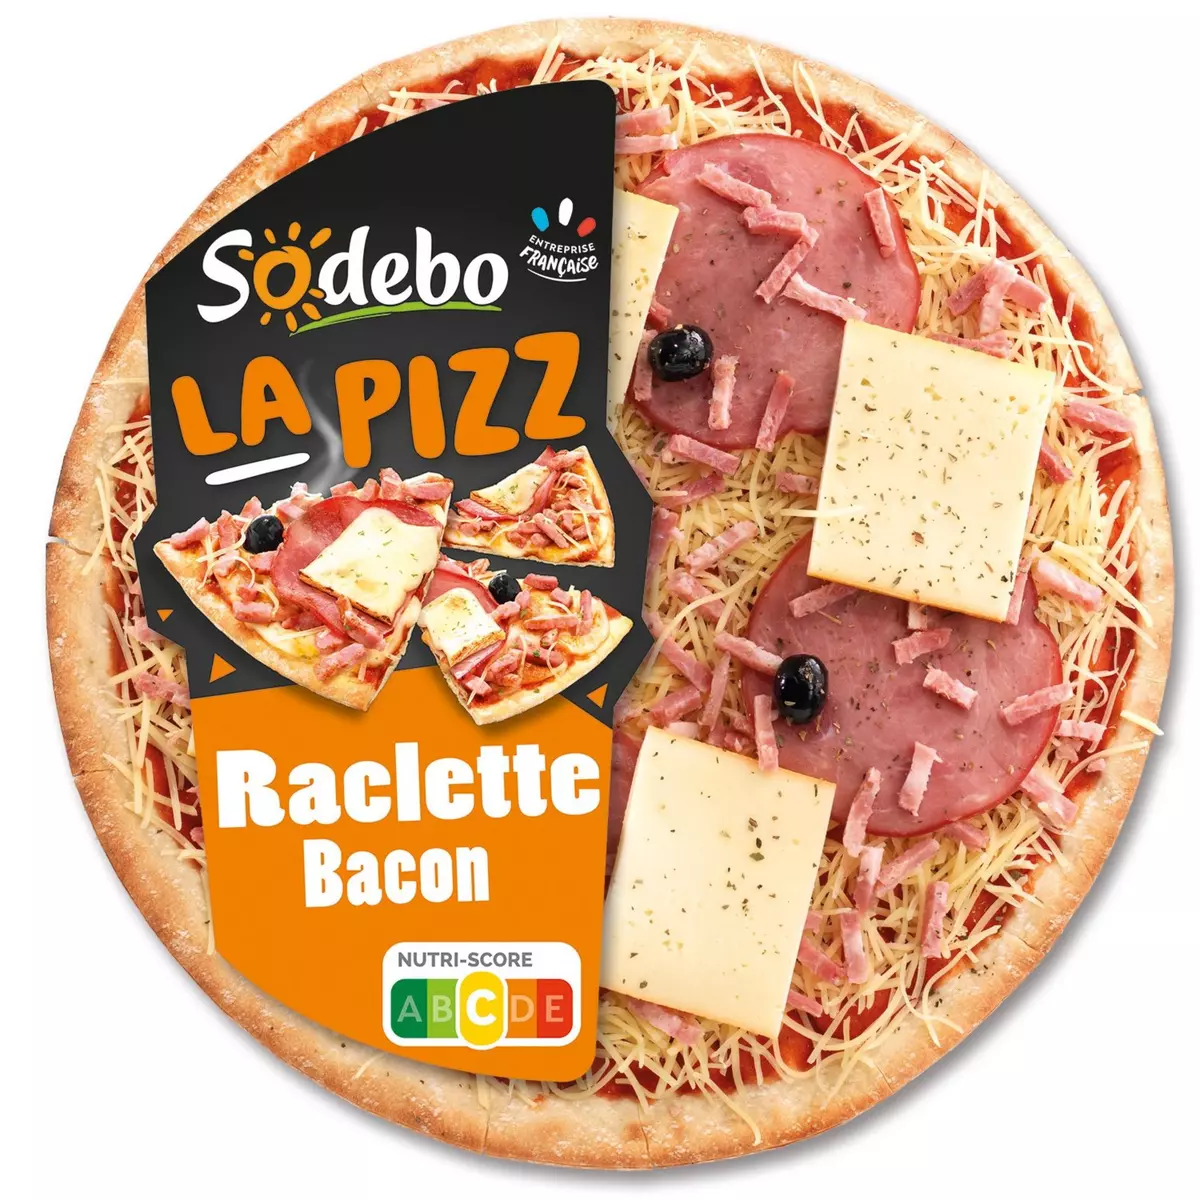 SODEBO Pizza la pizz raclette bacon à partager 470g